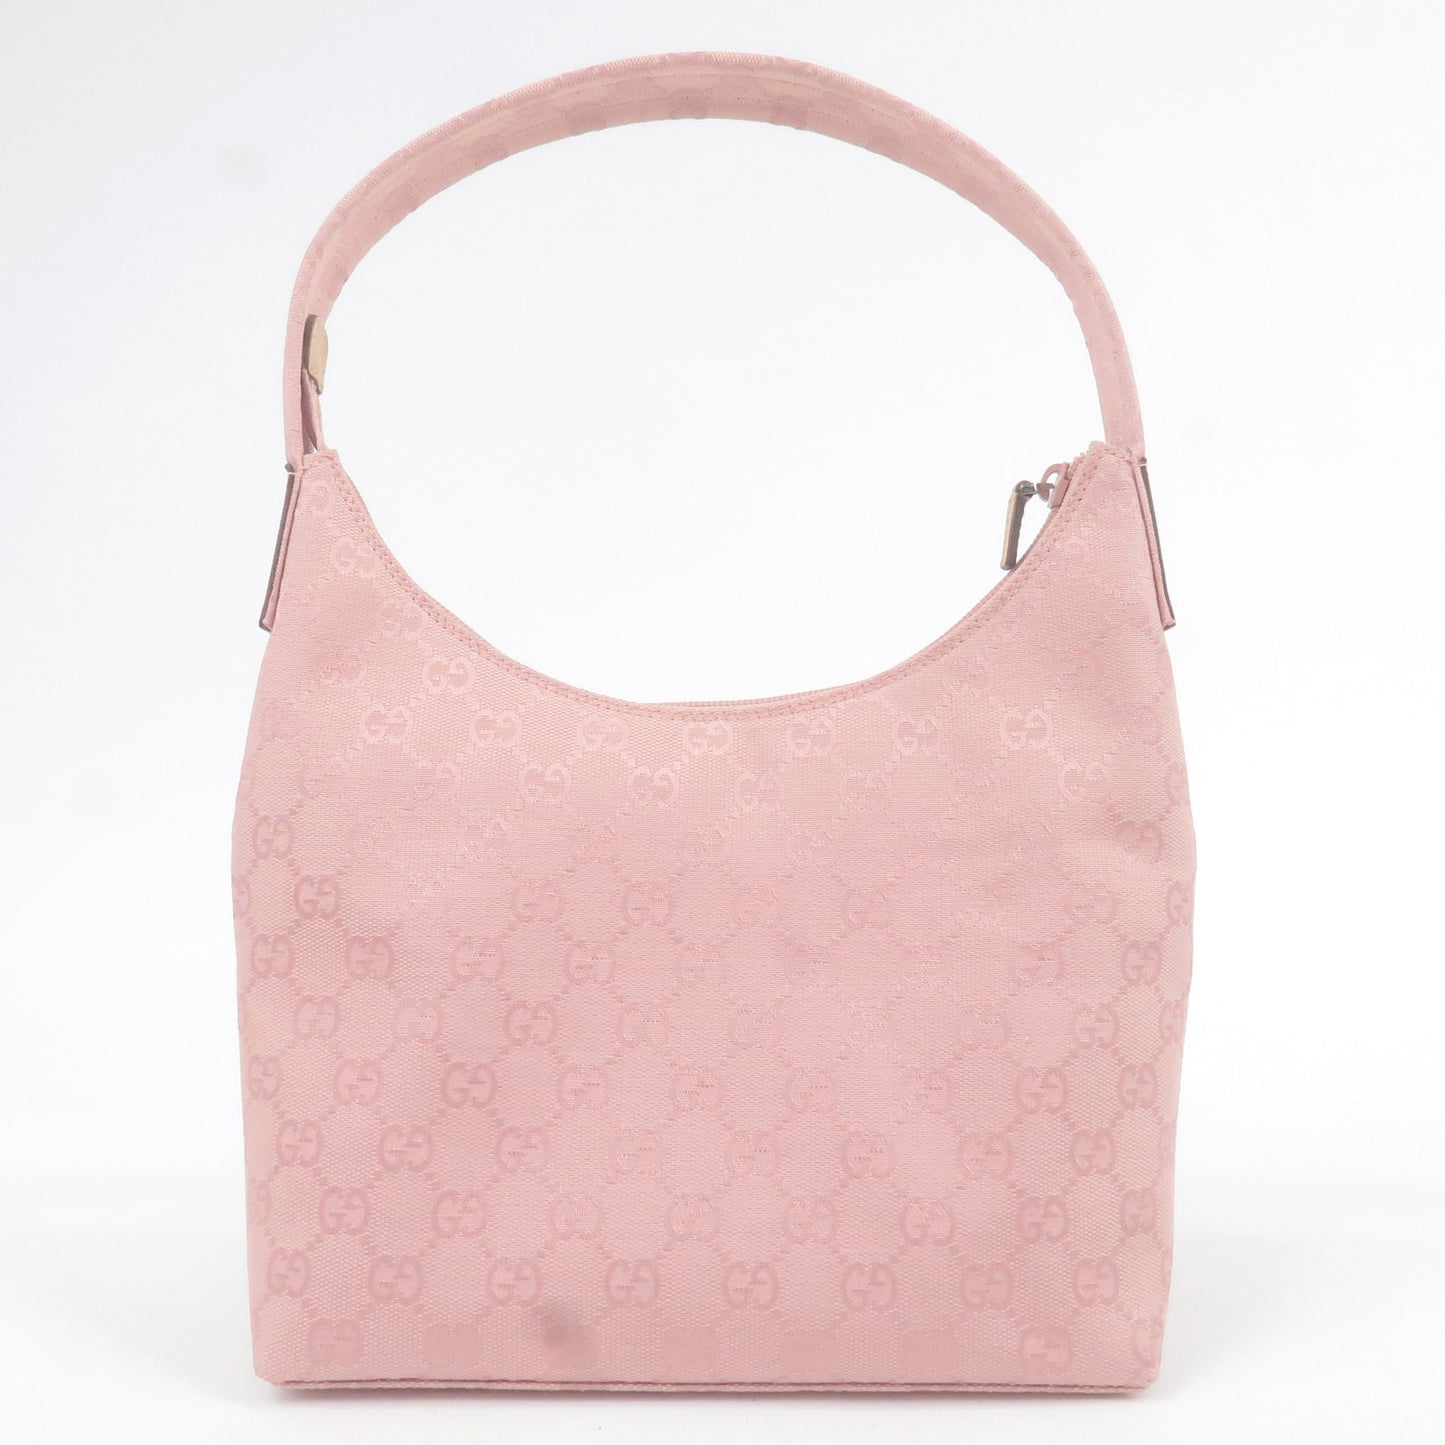 GUCCI GG Canvas Leather Shoulder Bag Pink Beige 001.3386